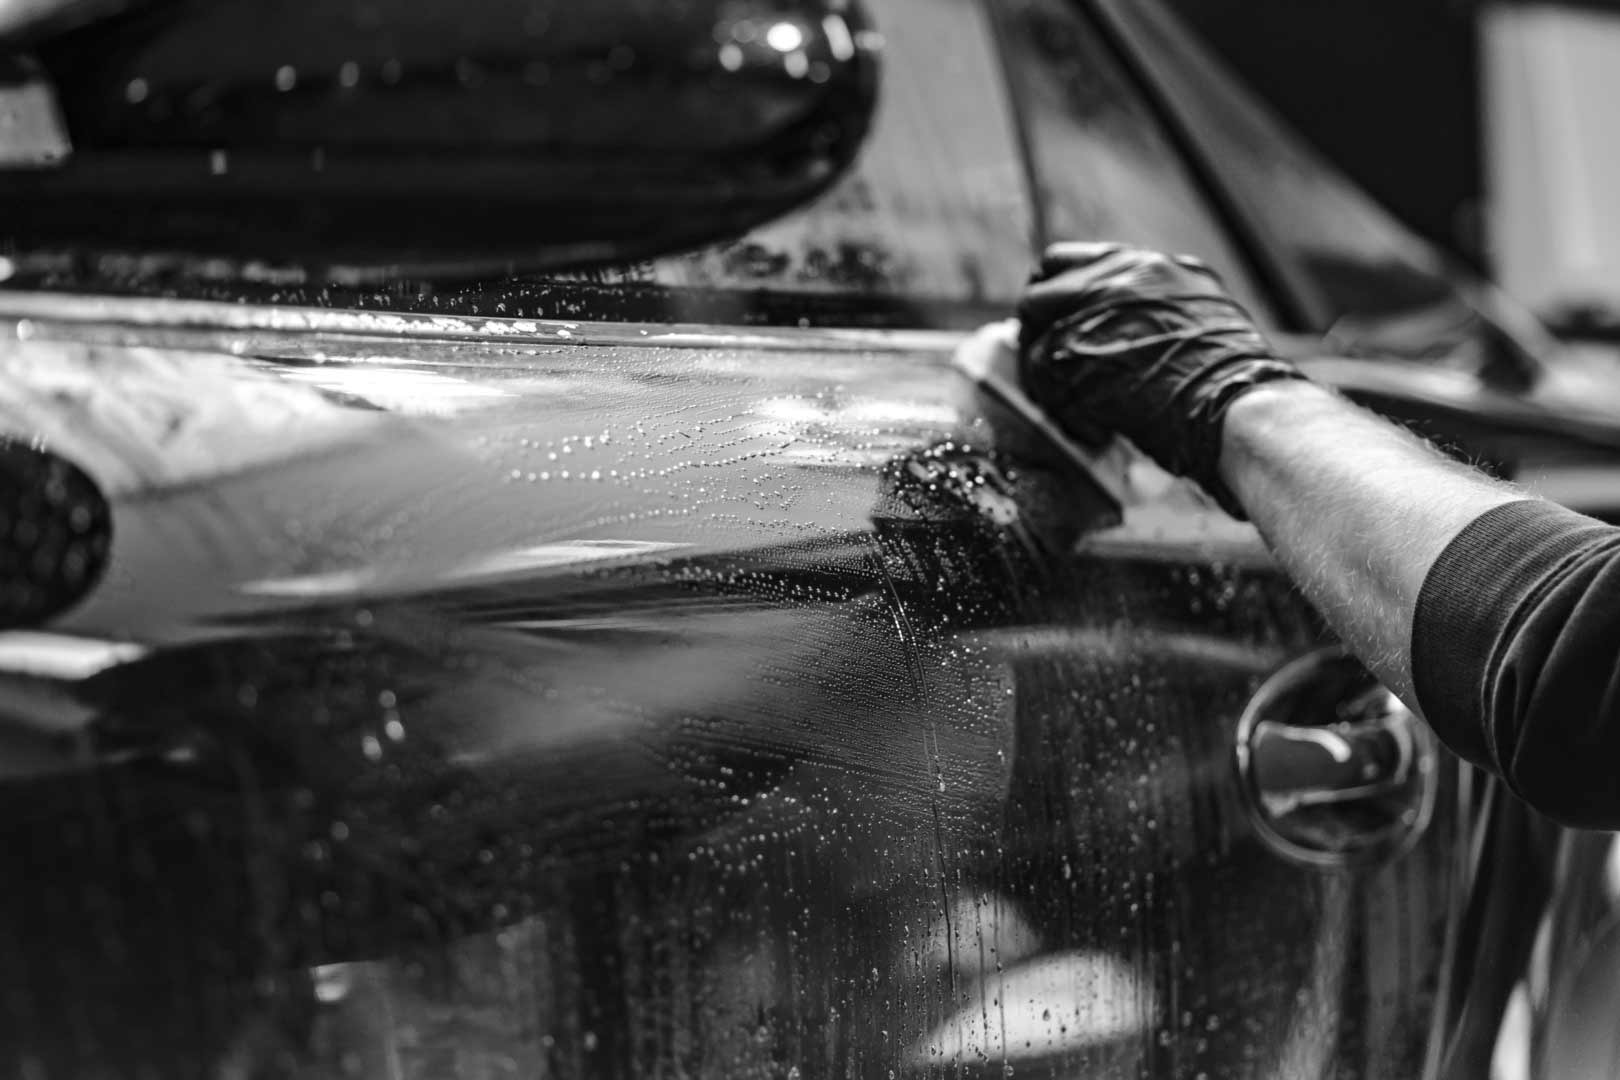 Limpia el interior de tu coche con los productos adecuados y de manera correcta